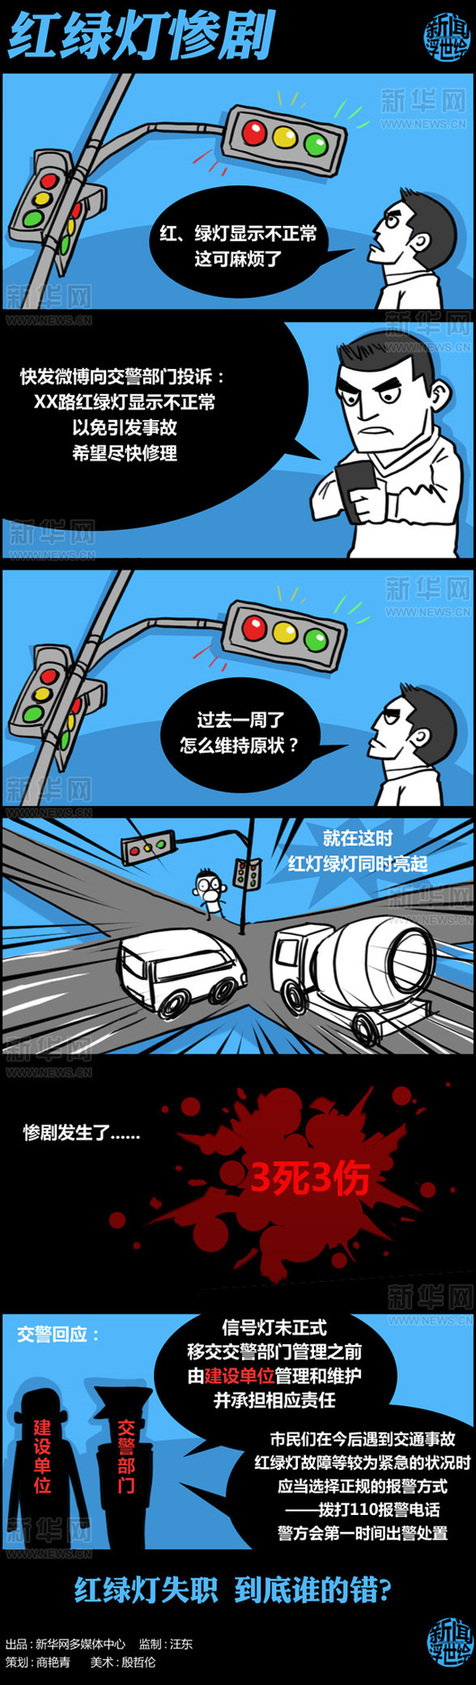 深圳红绿灯失调事故，谁之过？